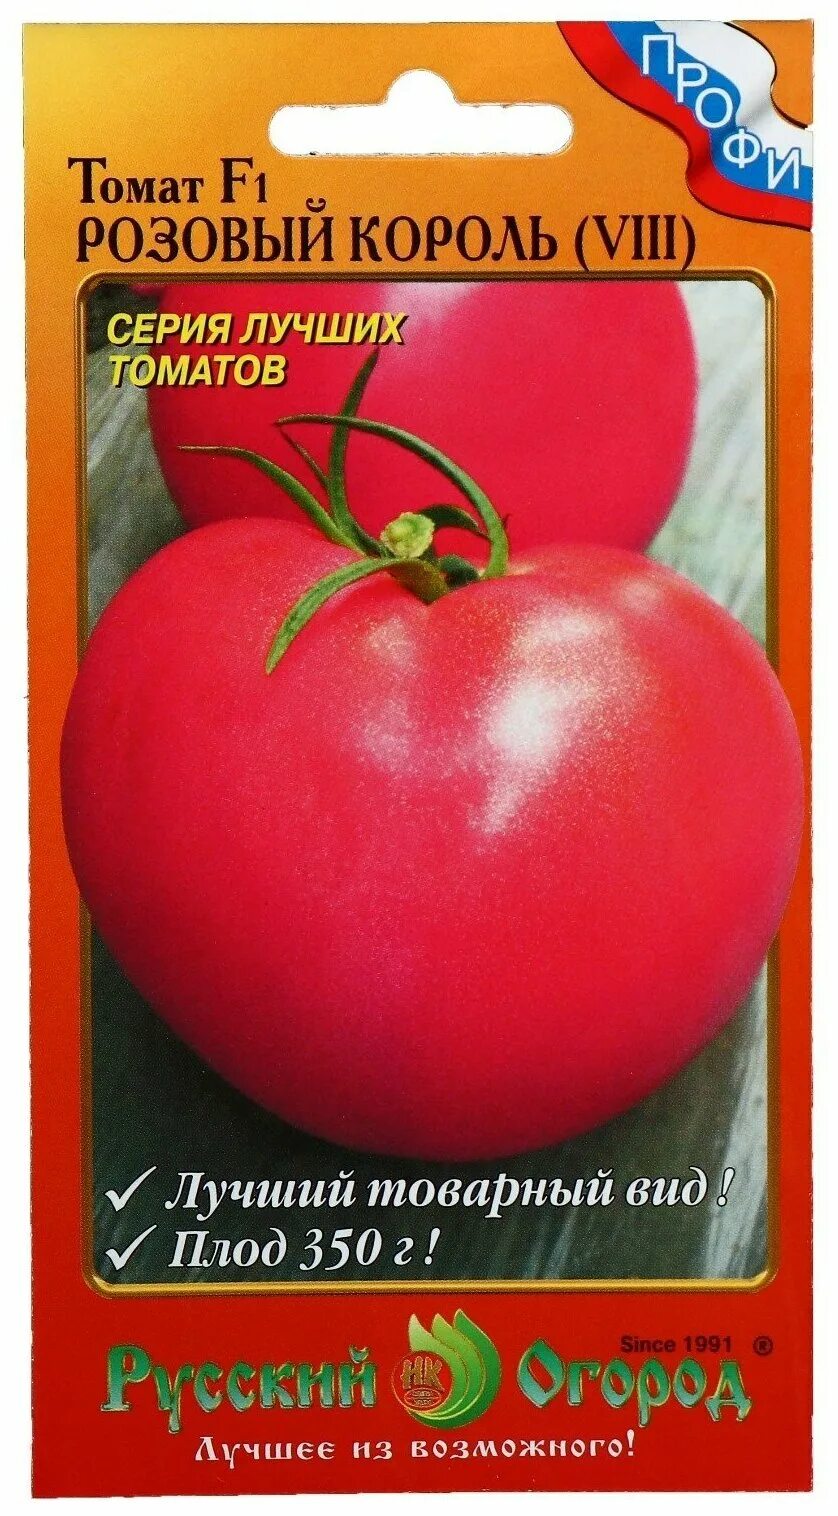 Семена томатов король королей купить